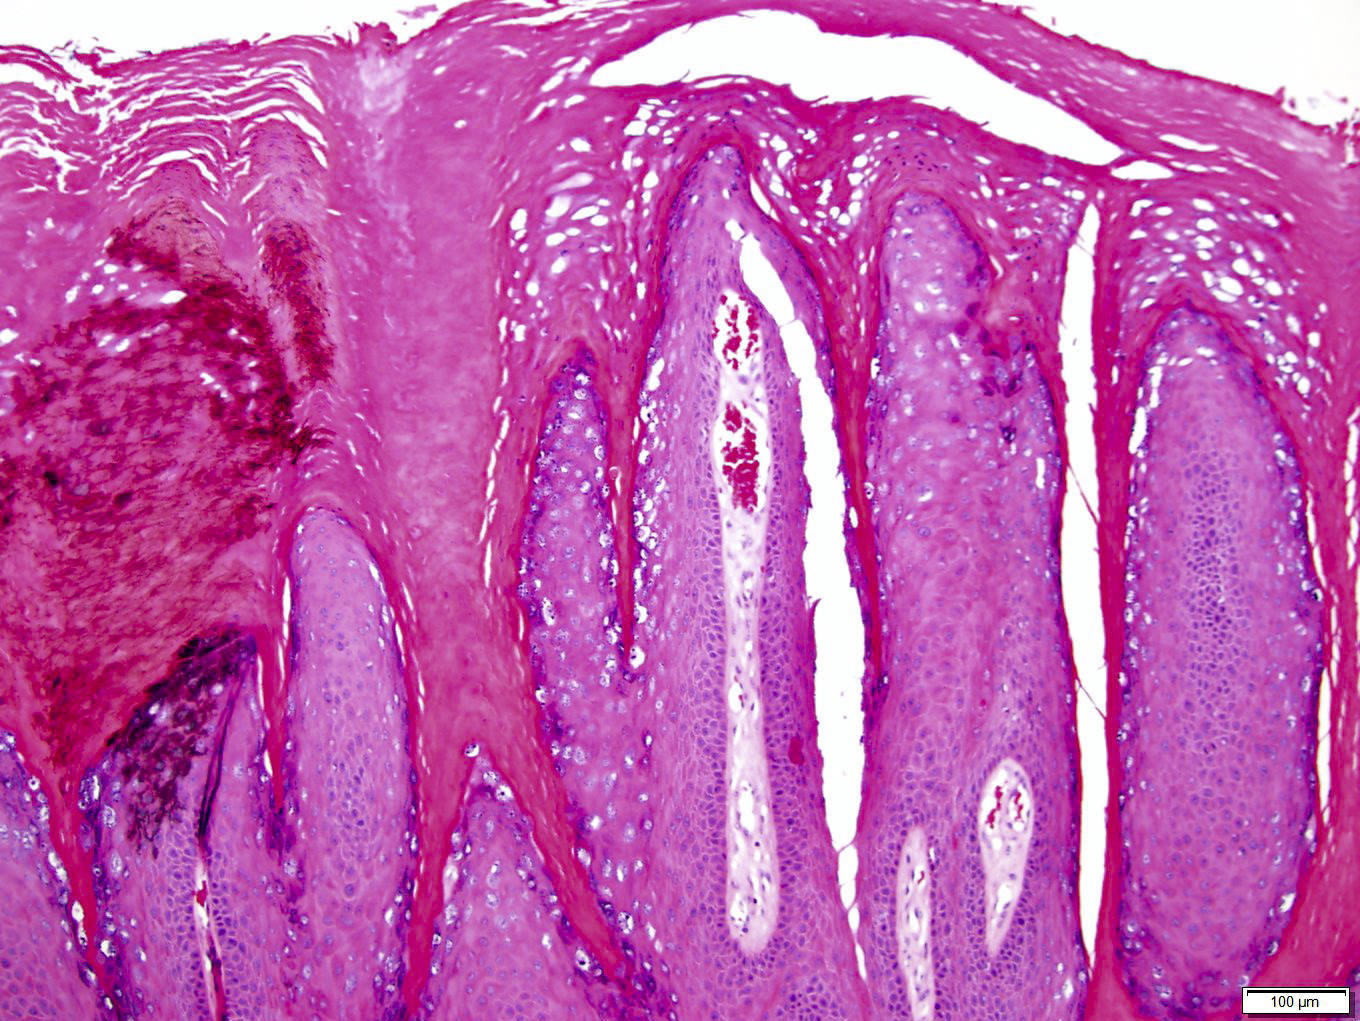 Papilloma skin histology. Skin Cancer - Squamous papilloma skin histopathology